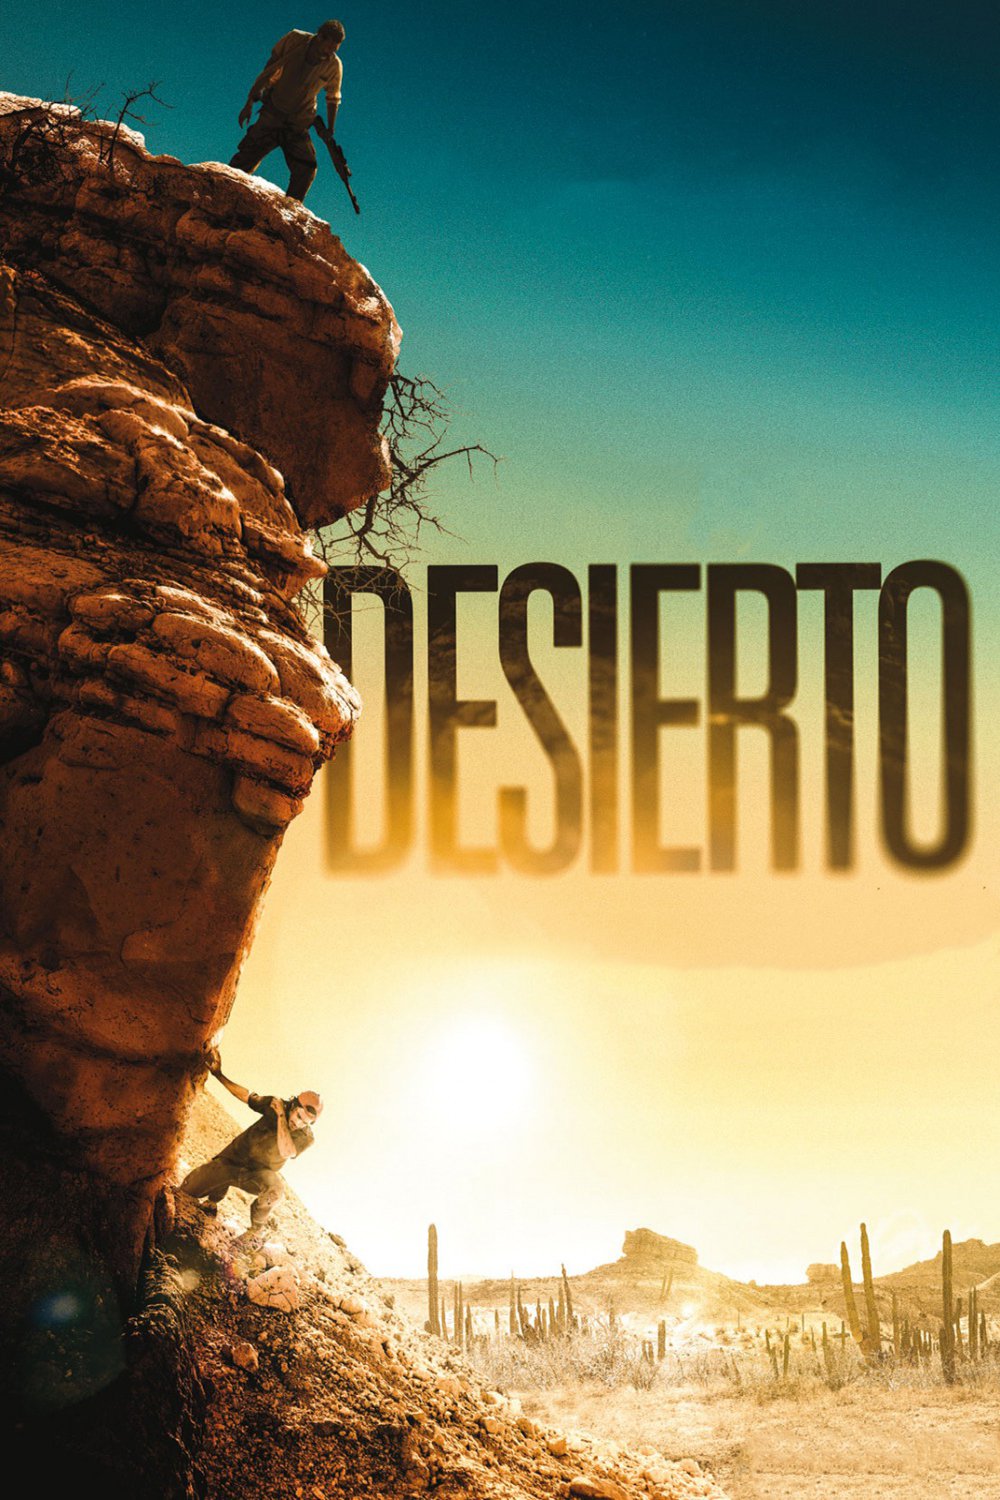 Poster de la película "Desierto"